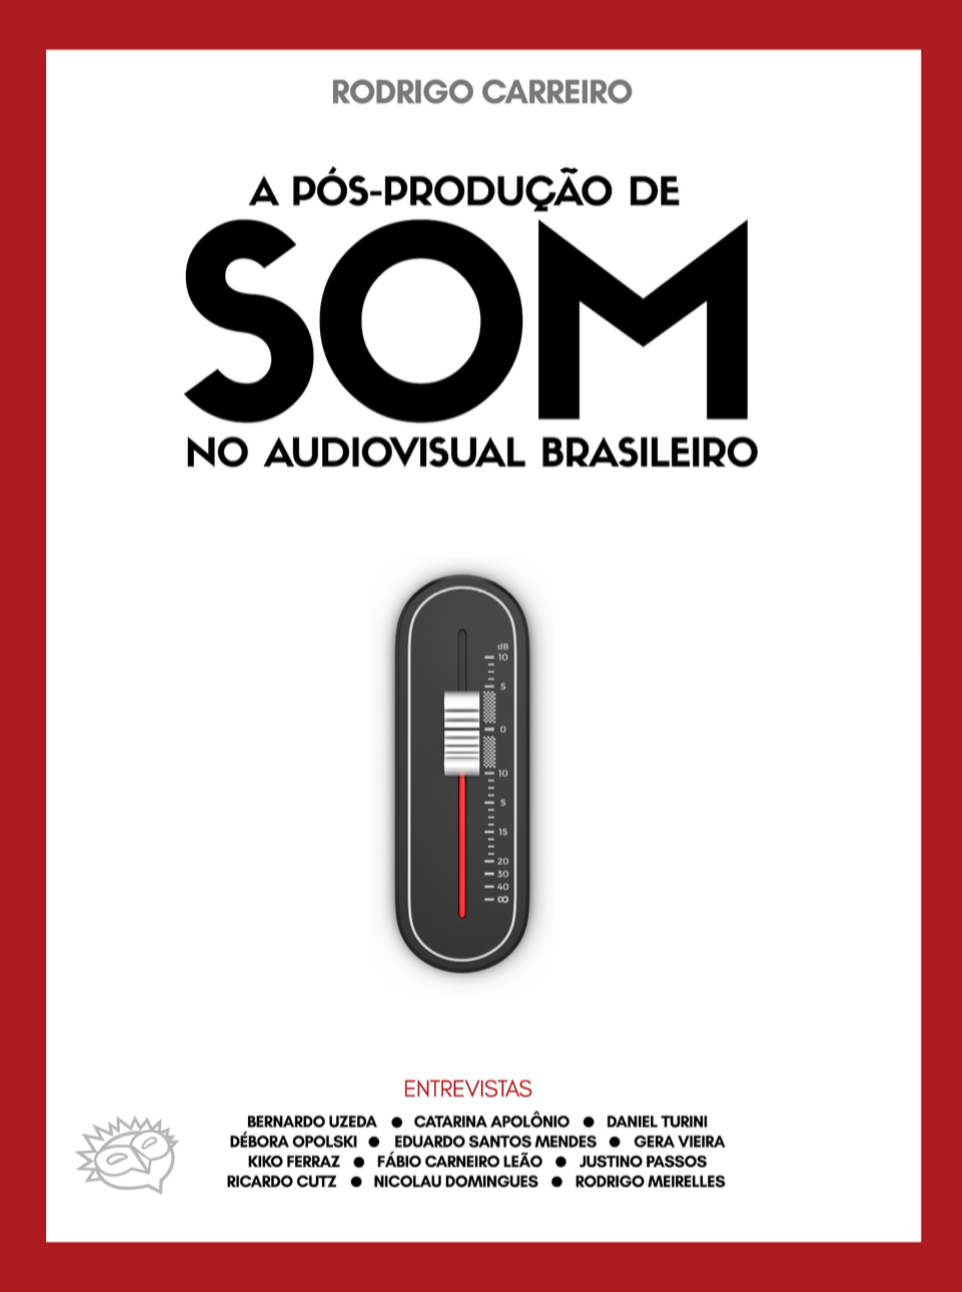 A pós-produção de som no audiovisual brasileiro